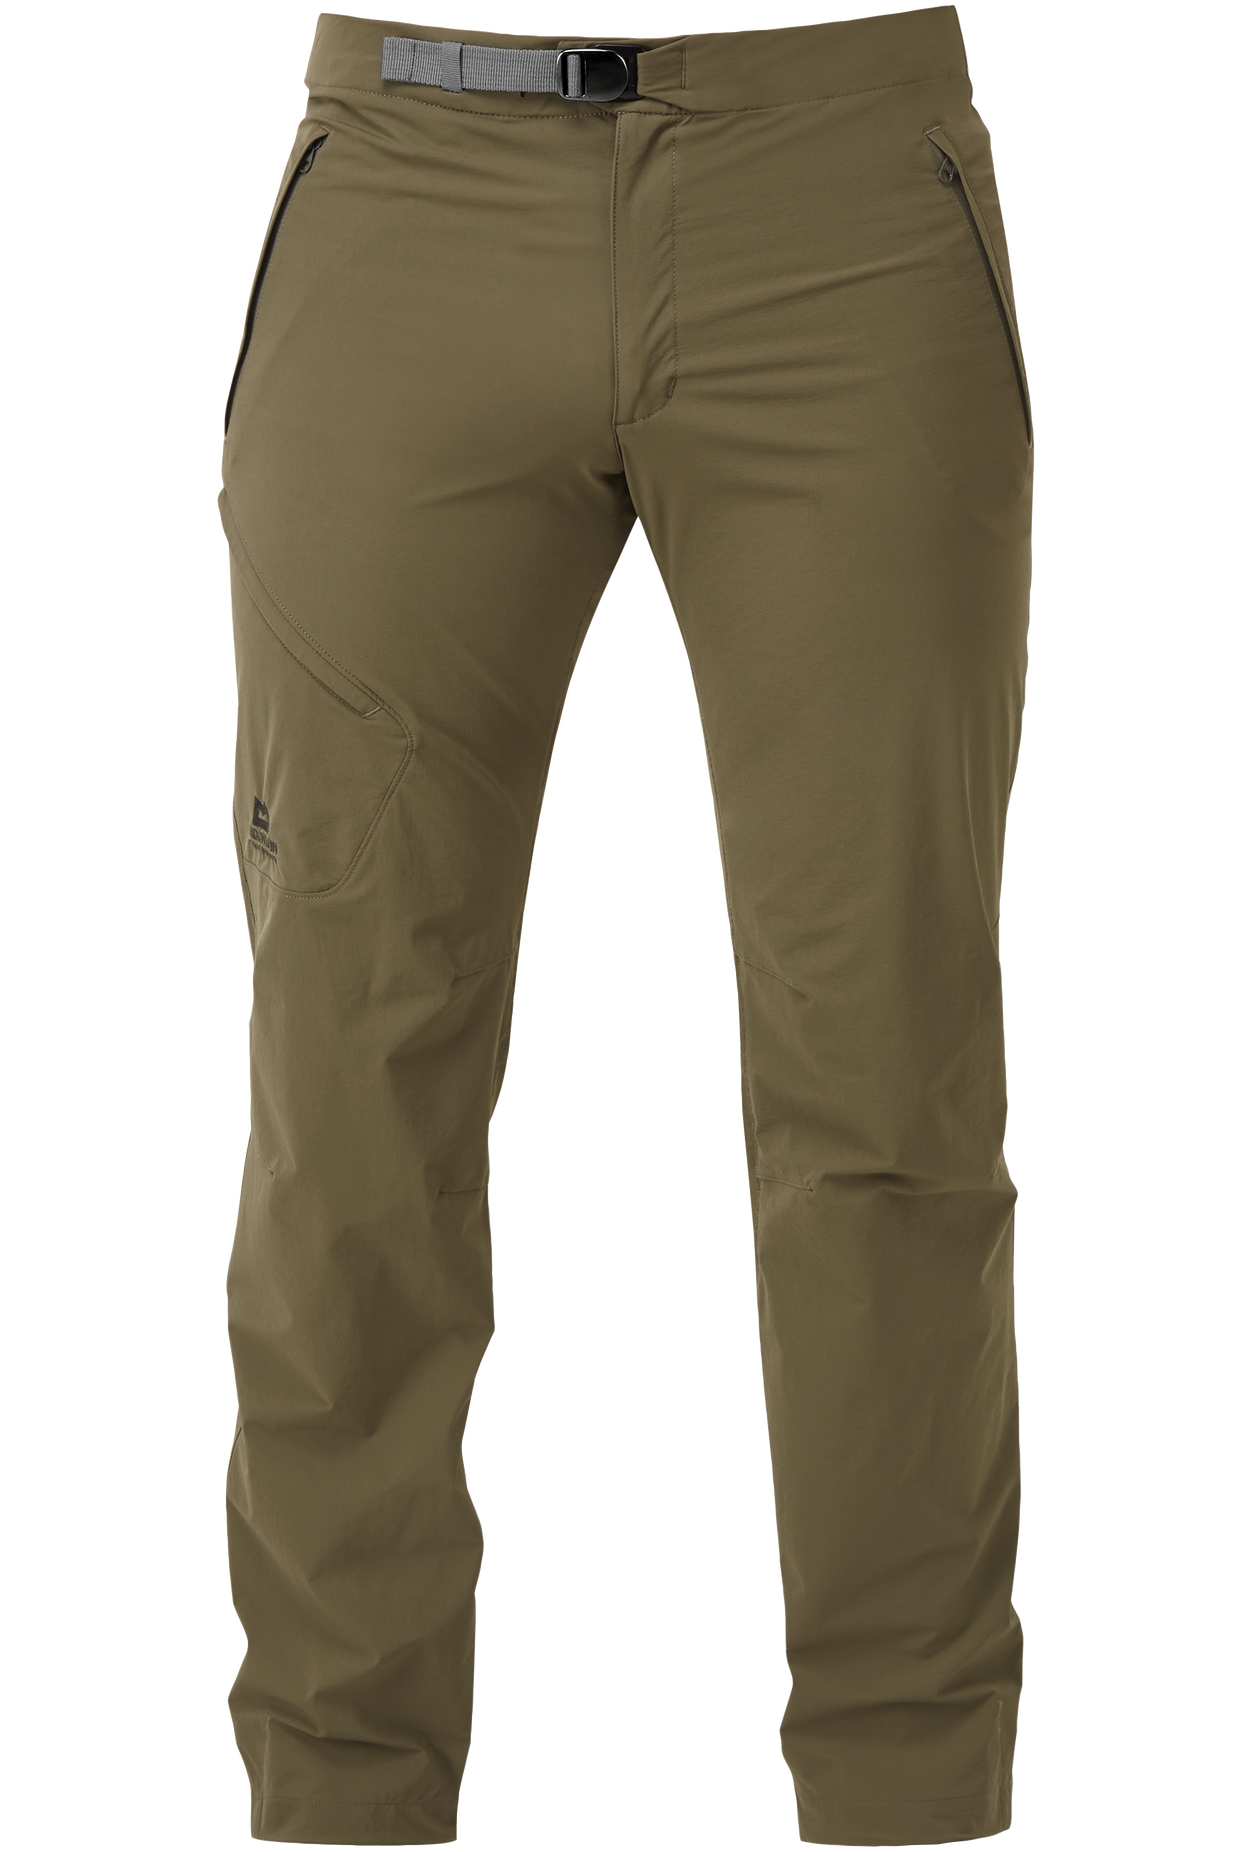 Mountain Equipment pánské softshellové kalhoty Comici Pant - prodloužené Barva: Mudstone, Velikost: 32/M